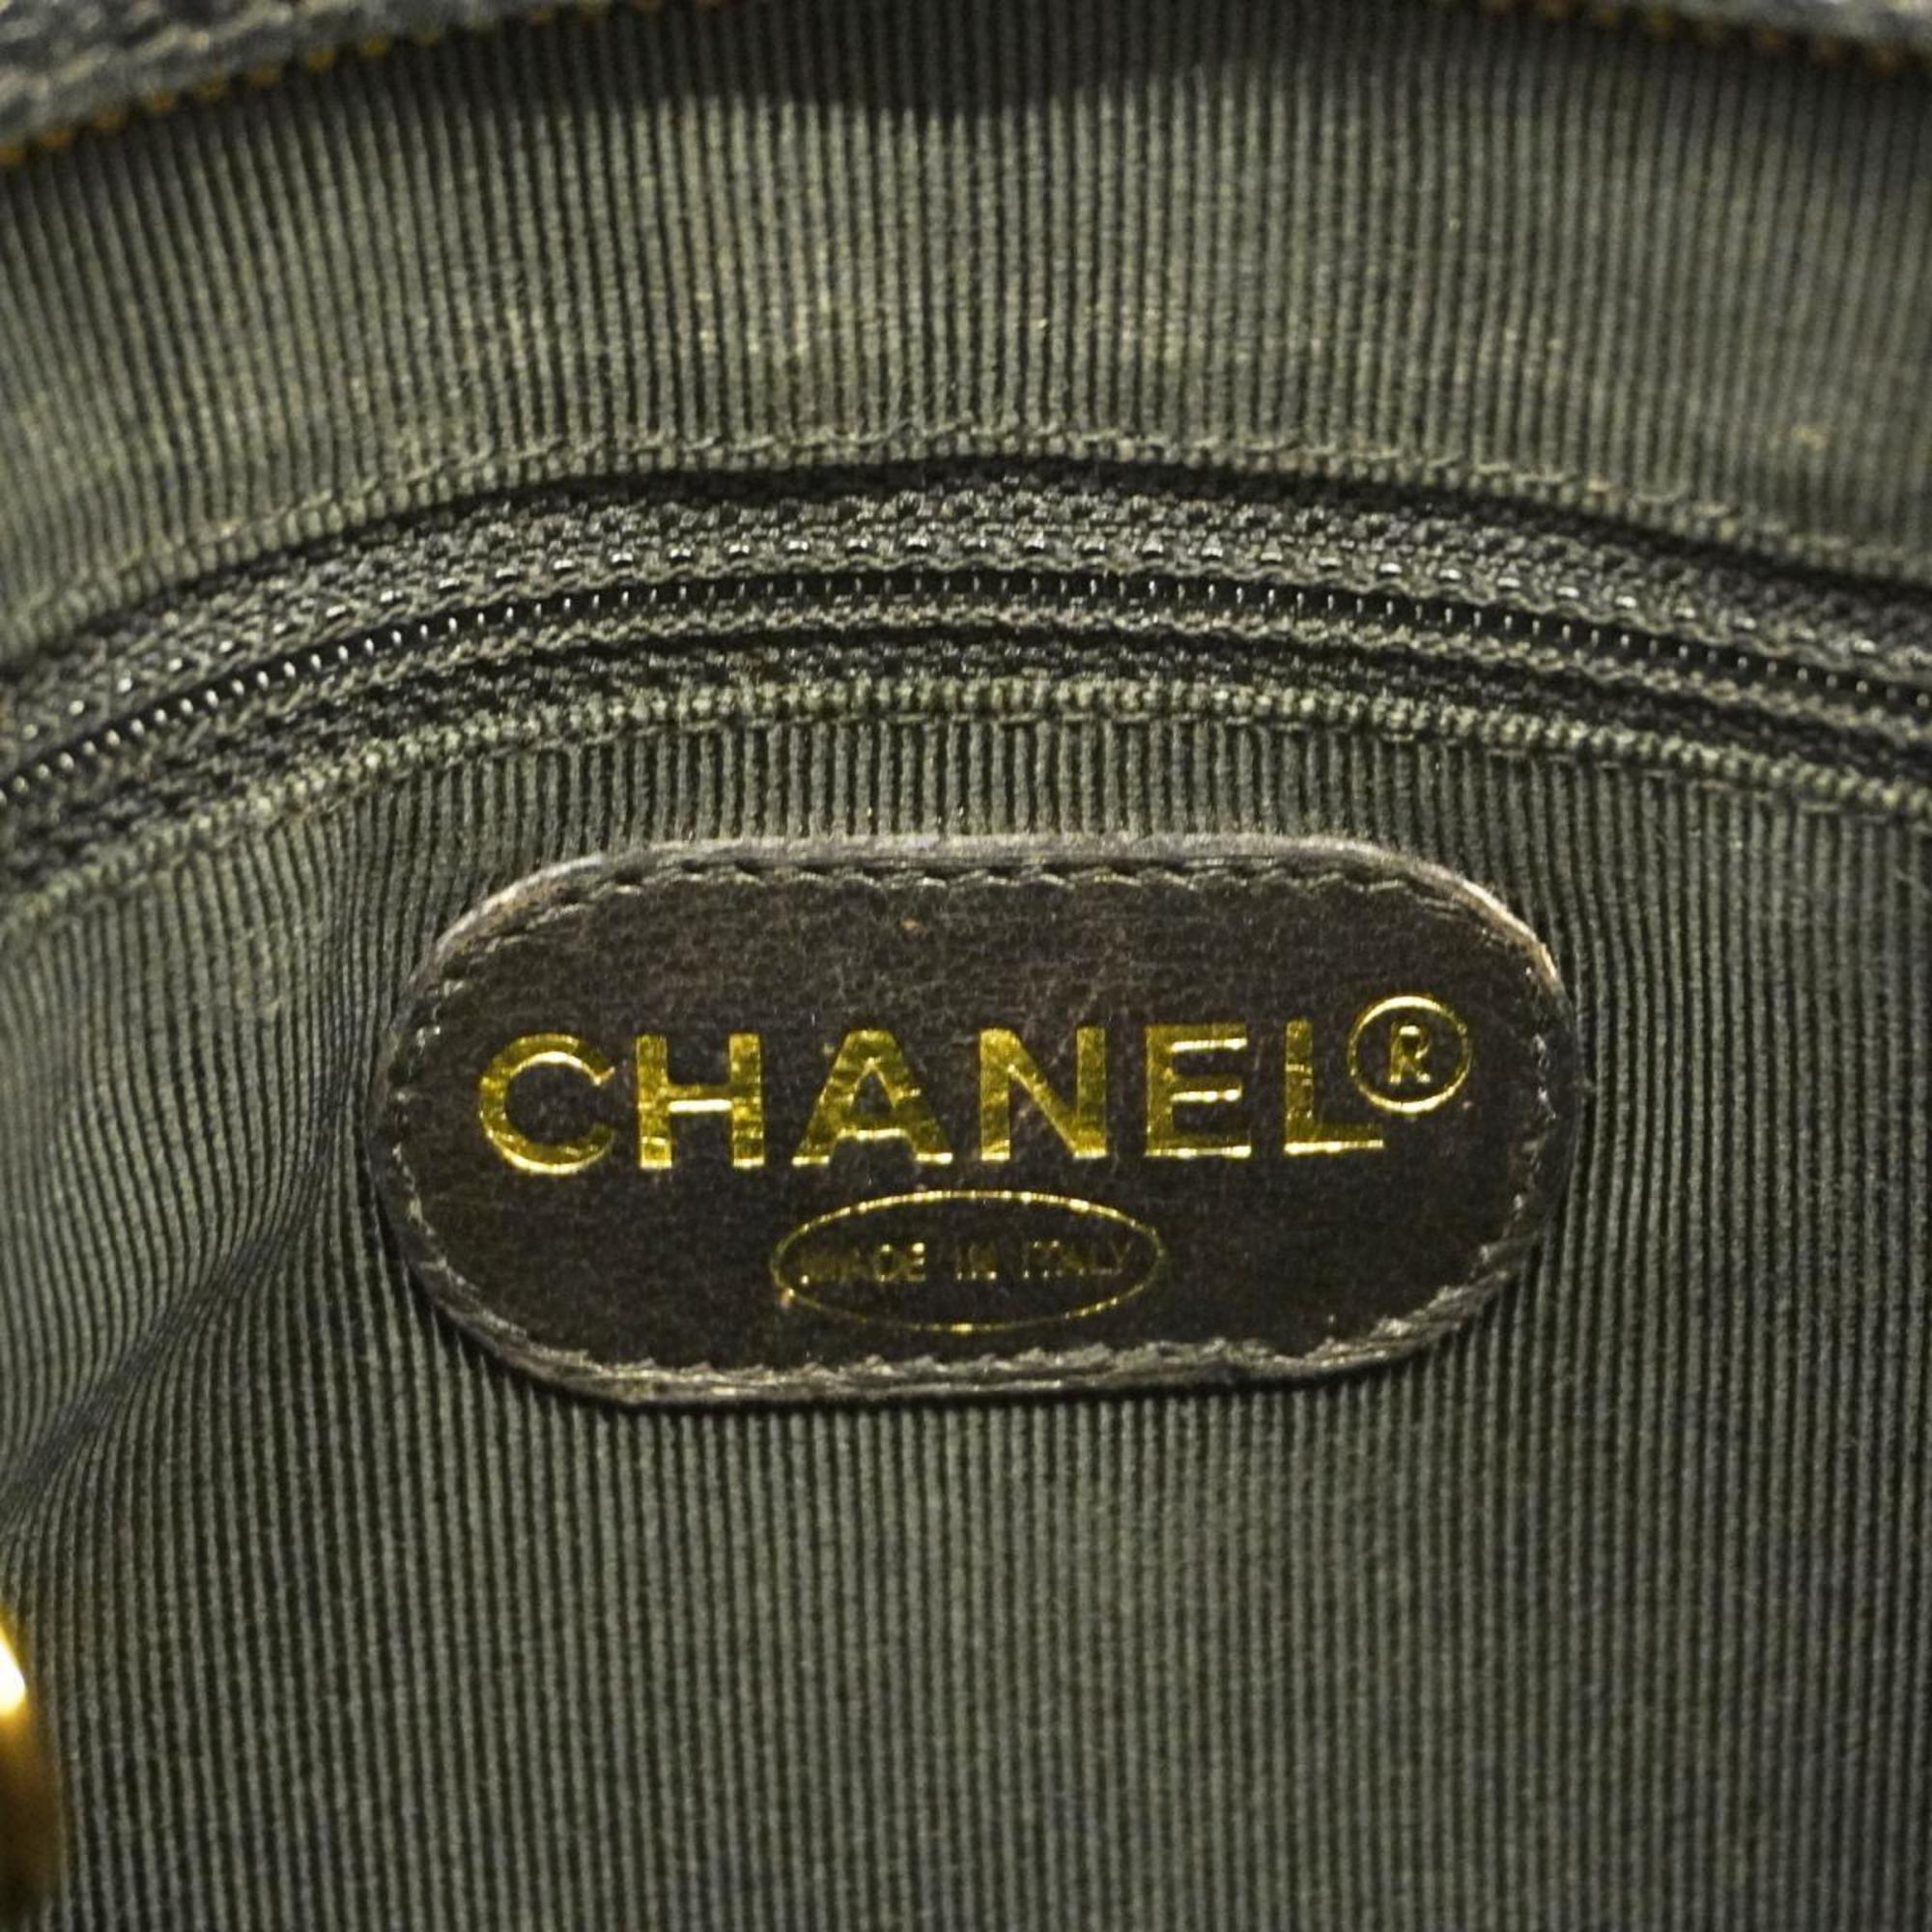 シャネル(Chanel) シャネル ショルダーバッグ トリプルココ チェーンショルダー キャビアスキン ブラック   レディース